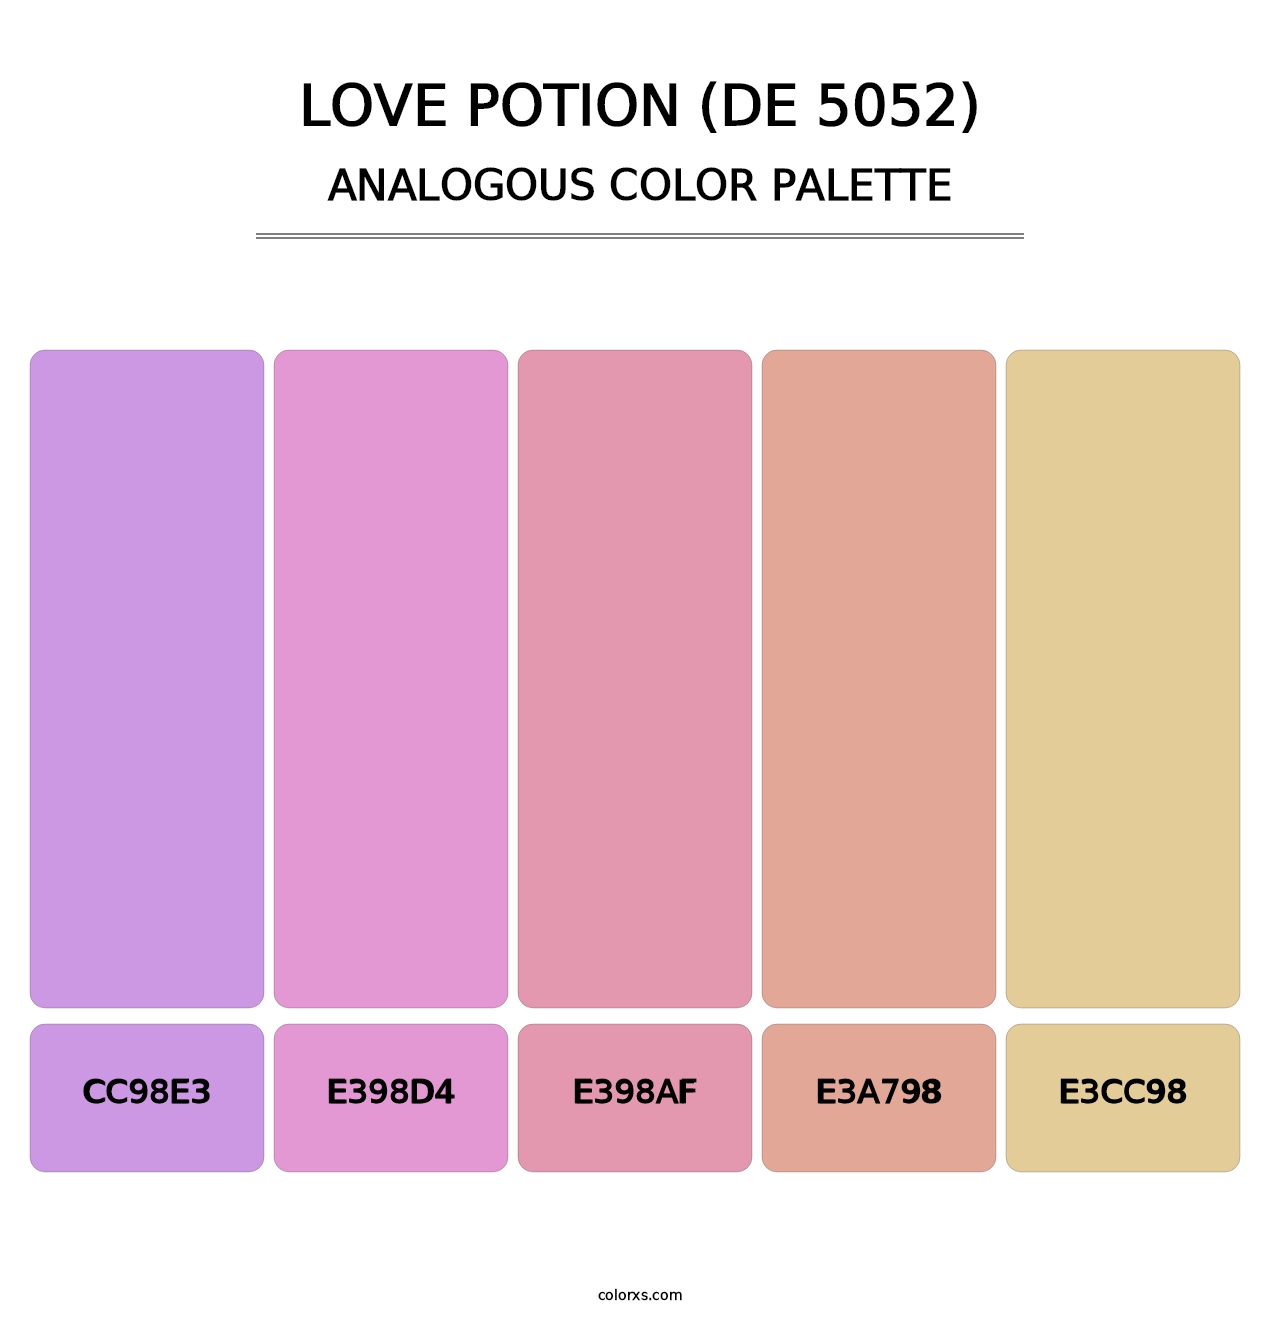 Love Potion (DE 5052) - Analogous Color Palette